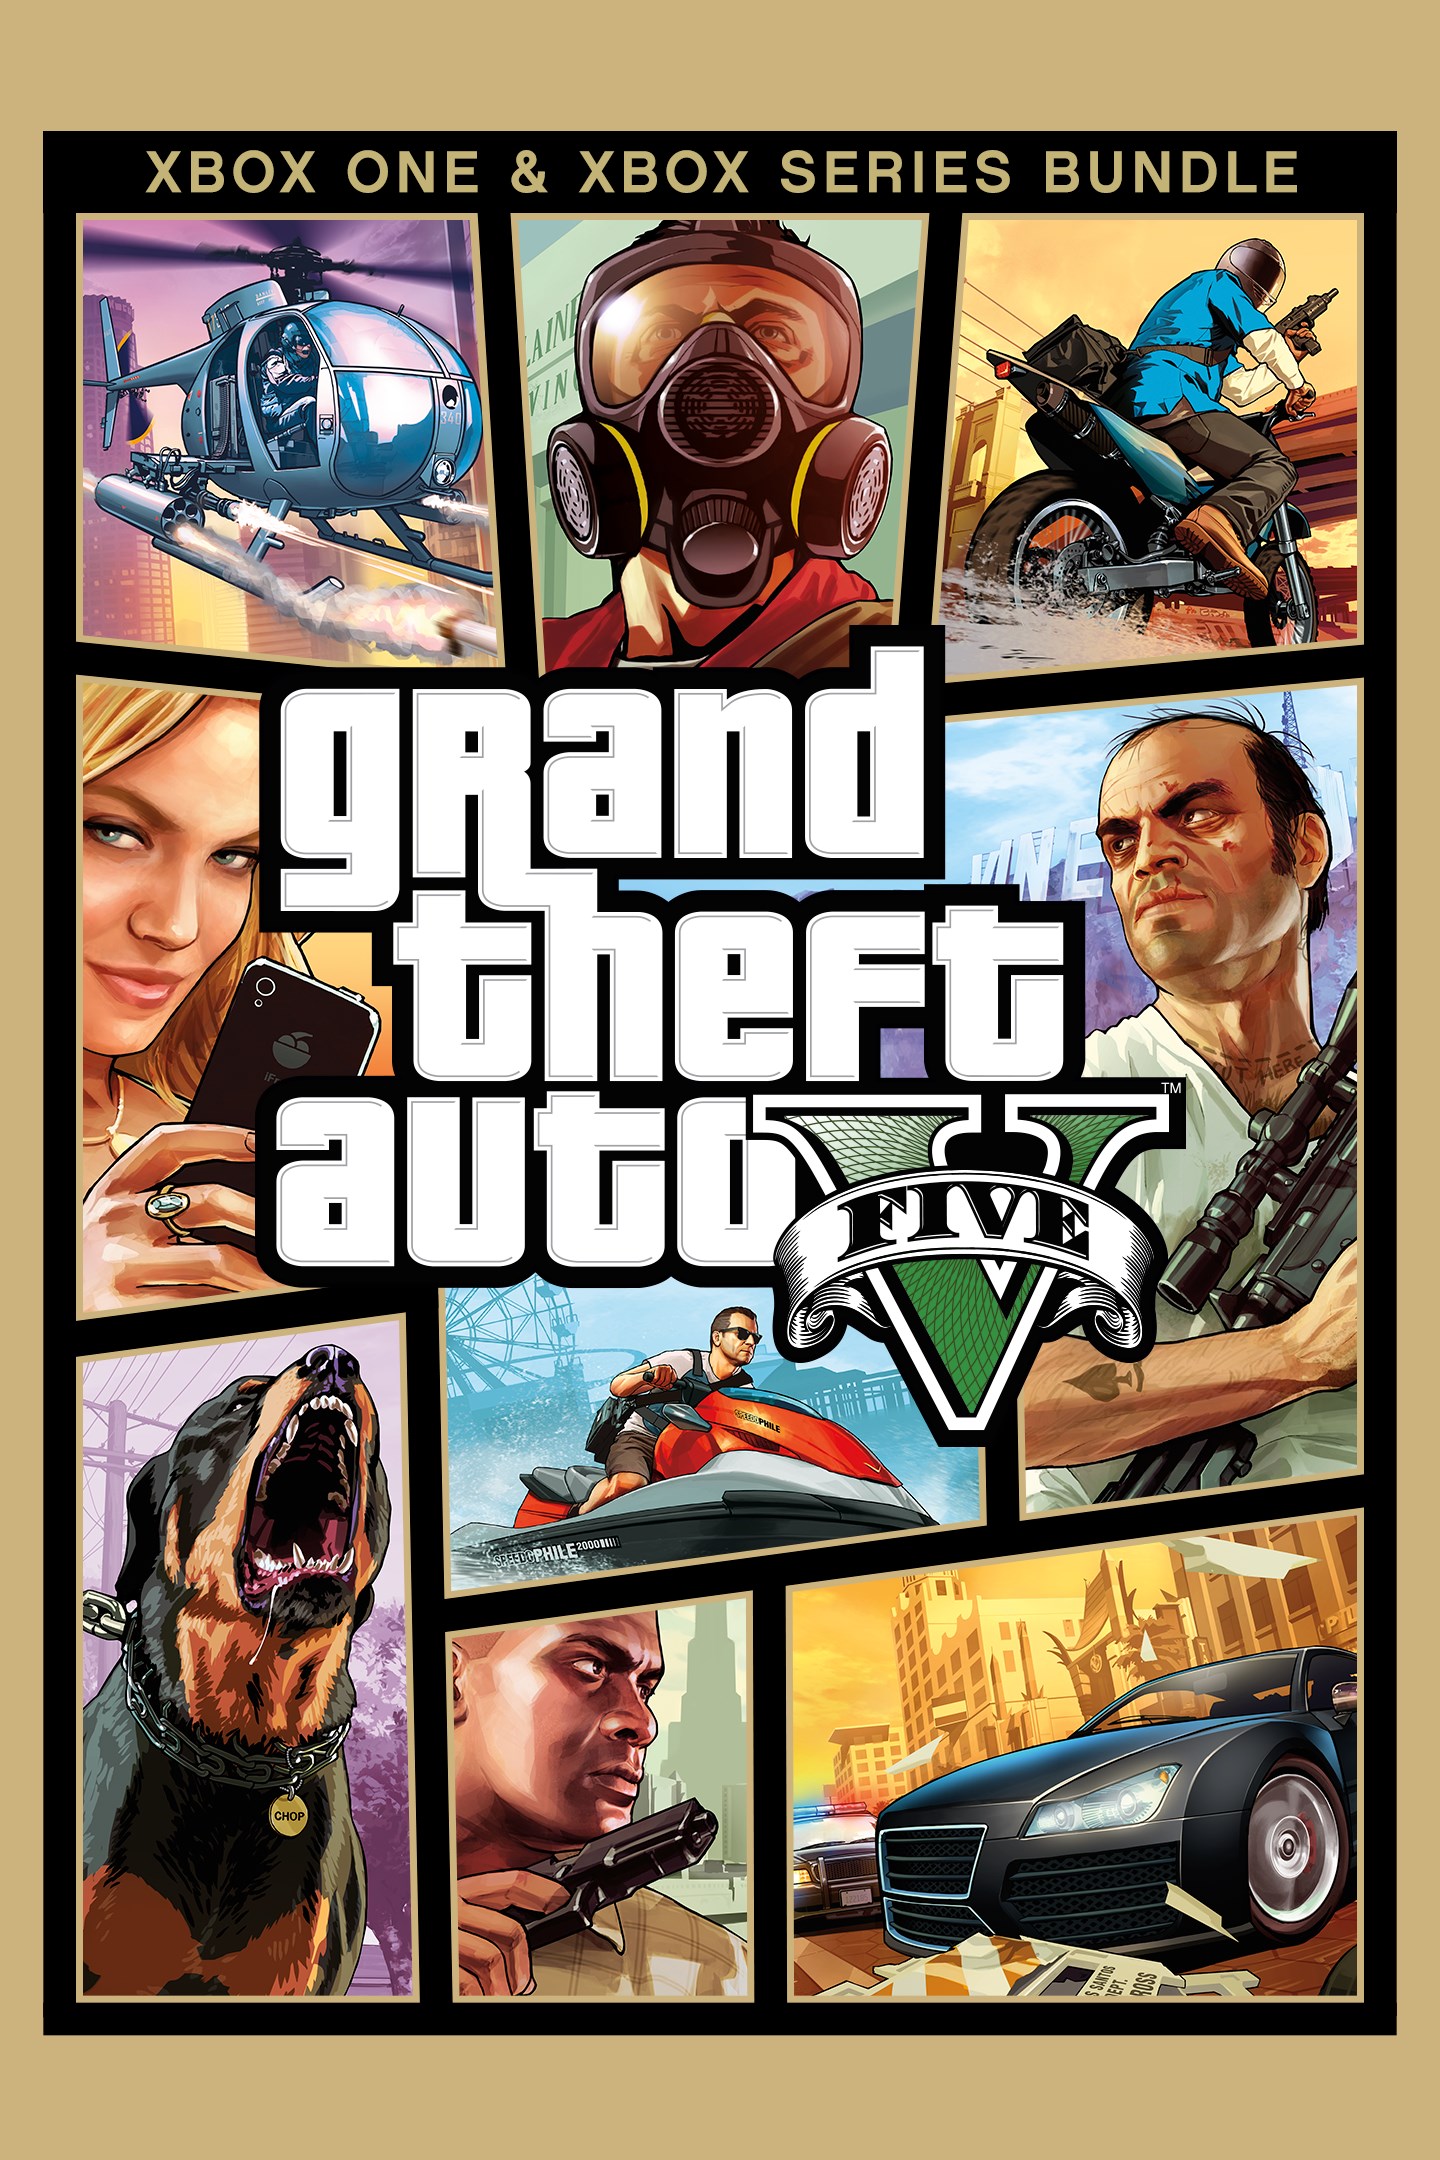 Sin aliento Clancy comprar Grand Theft Auto V | Xbox